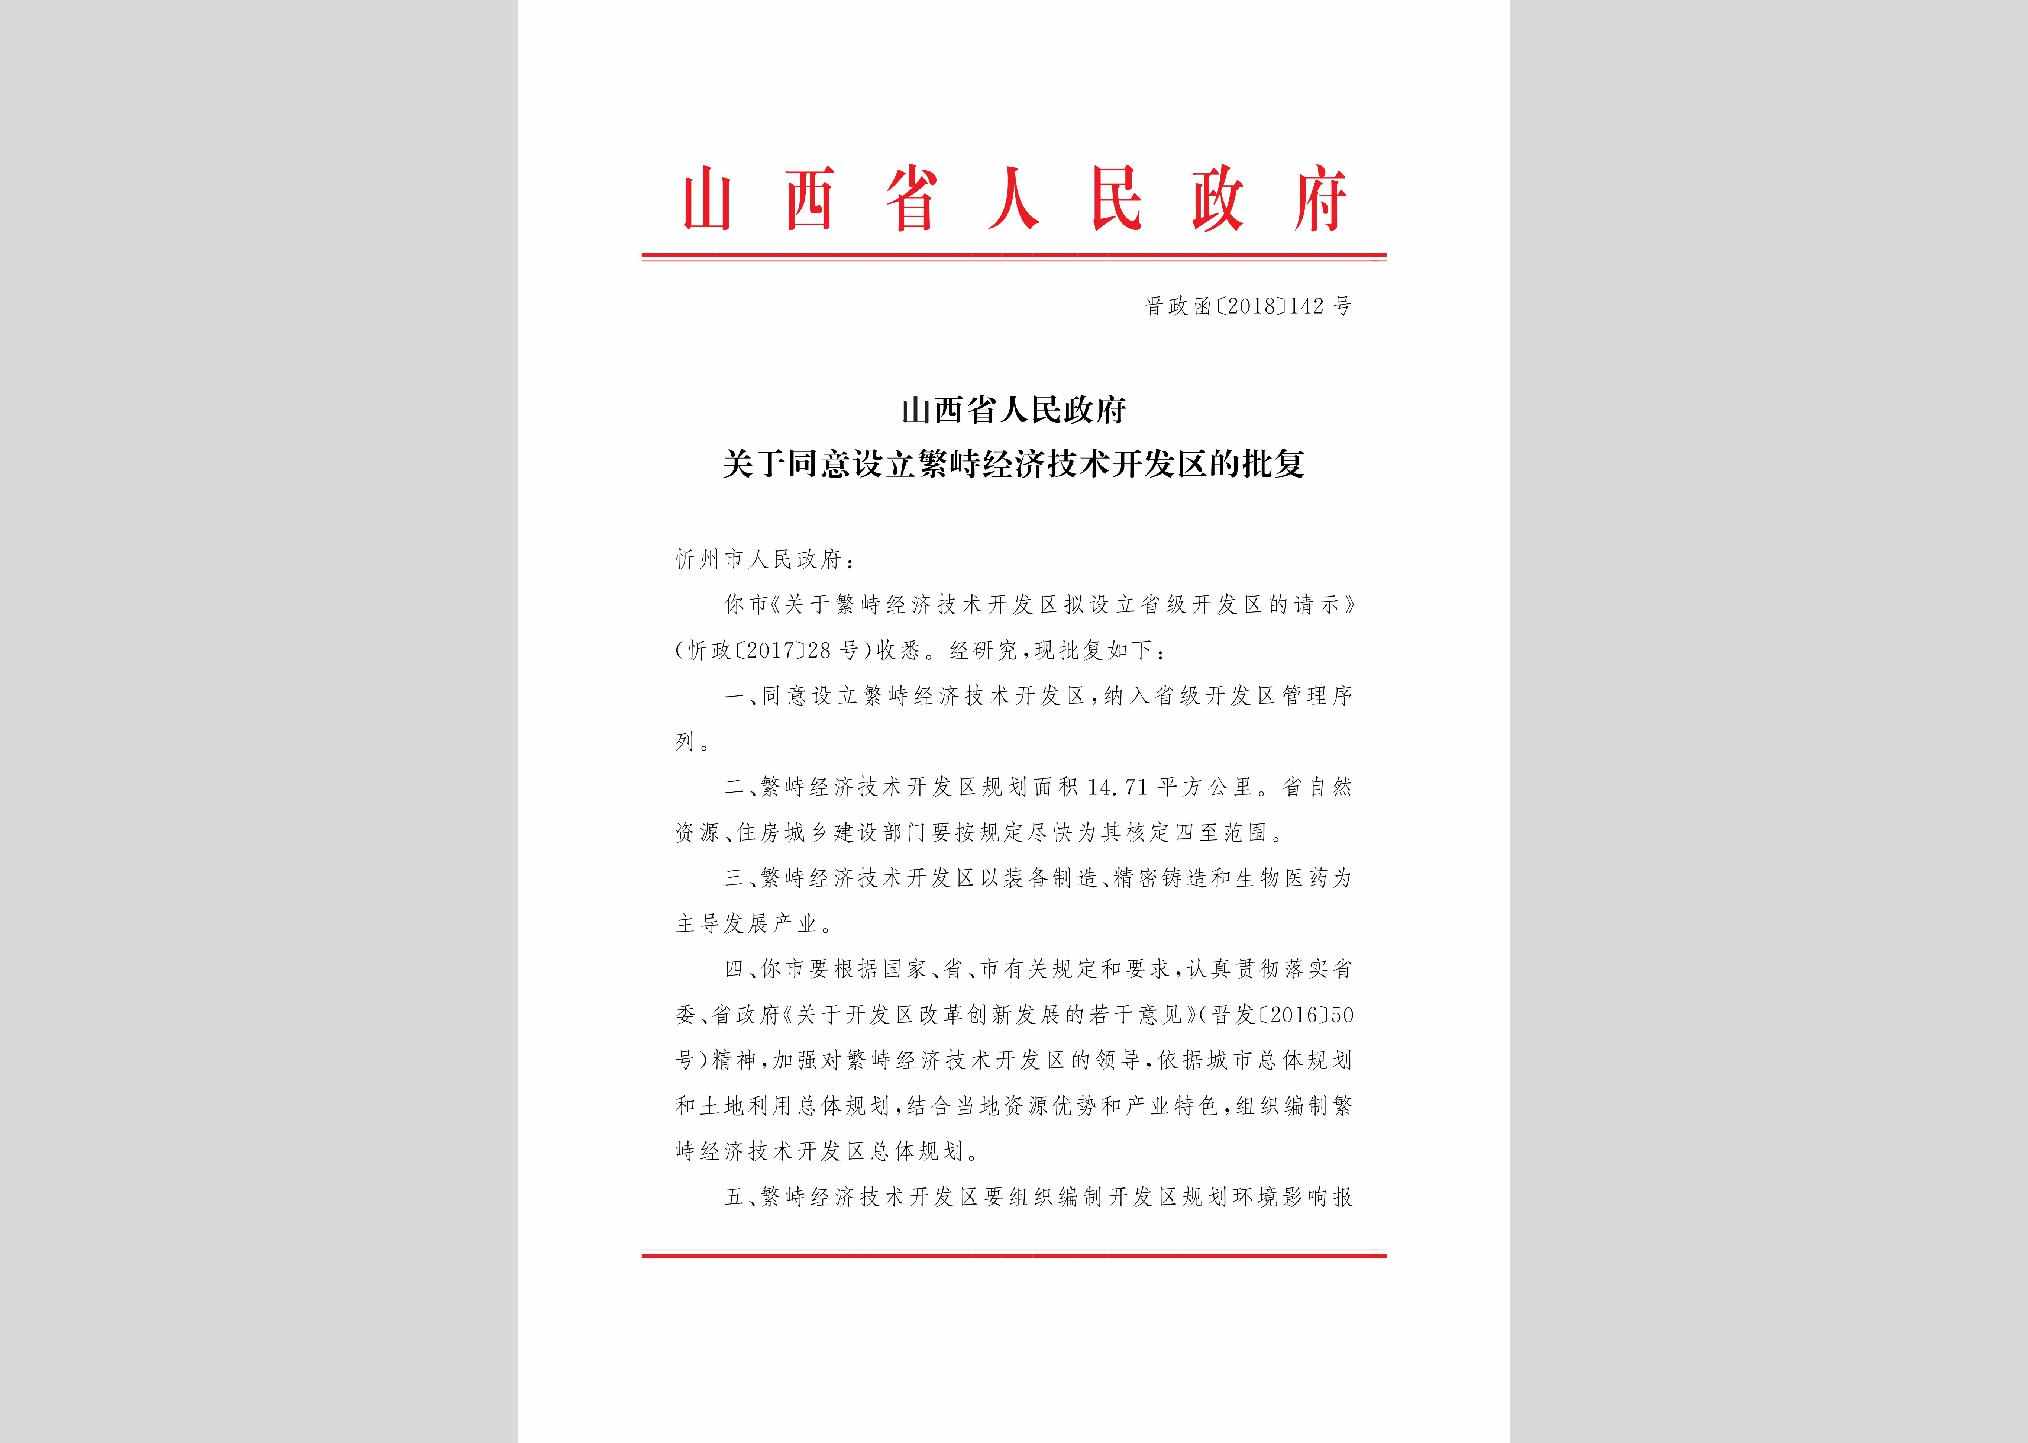 晋政函[2018]142号：山西省人民政府关于同意设立繁峙经济技术开发区的批复